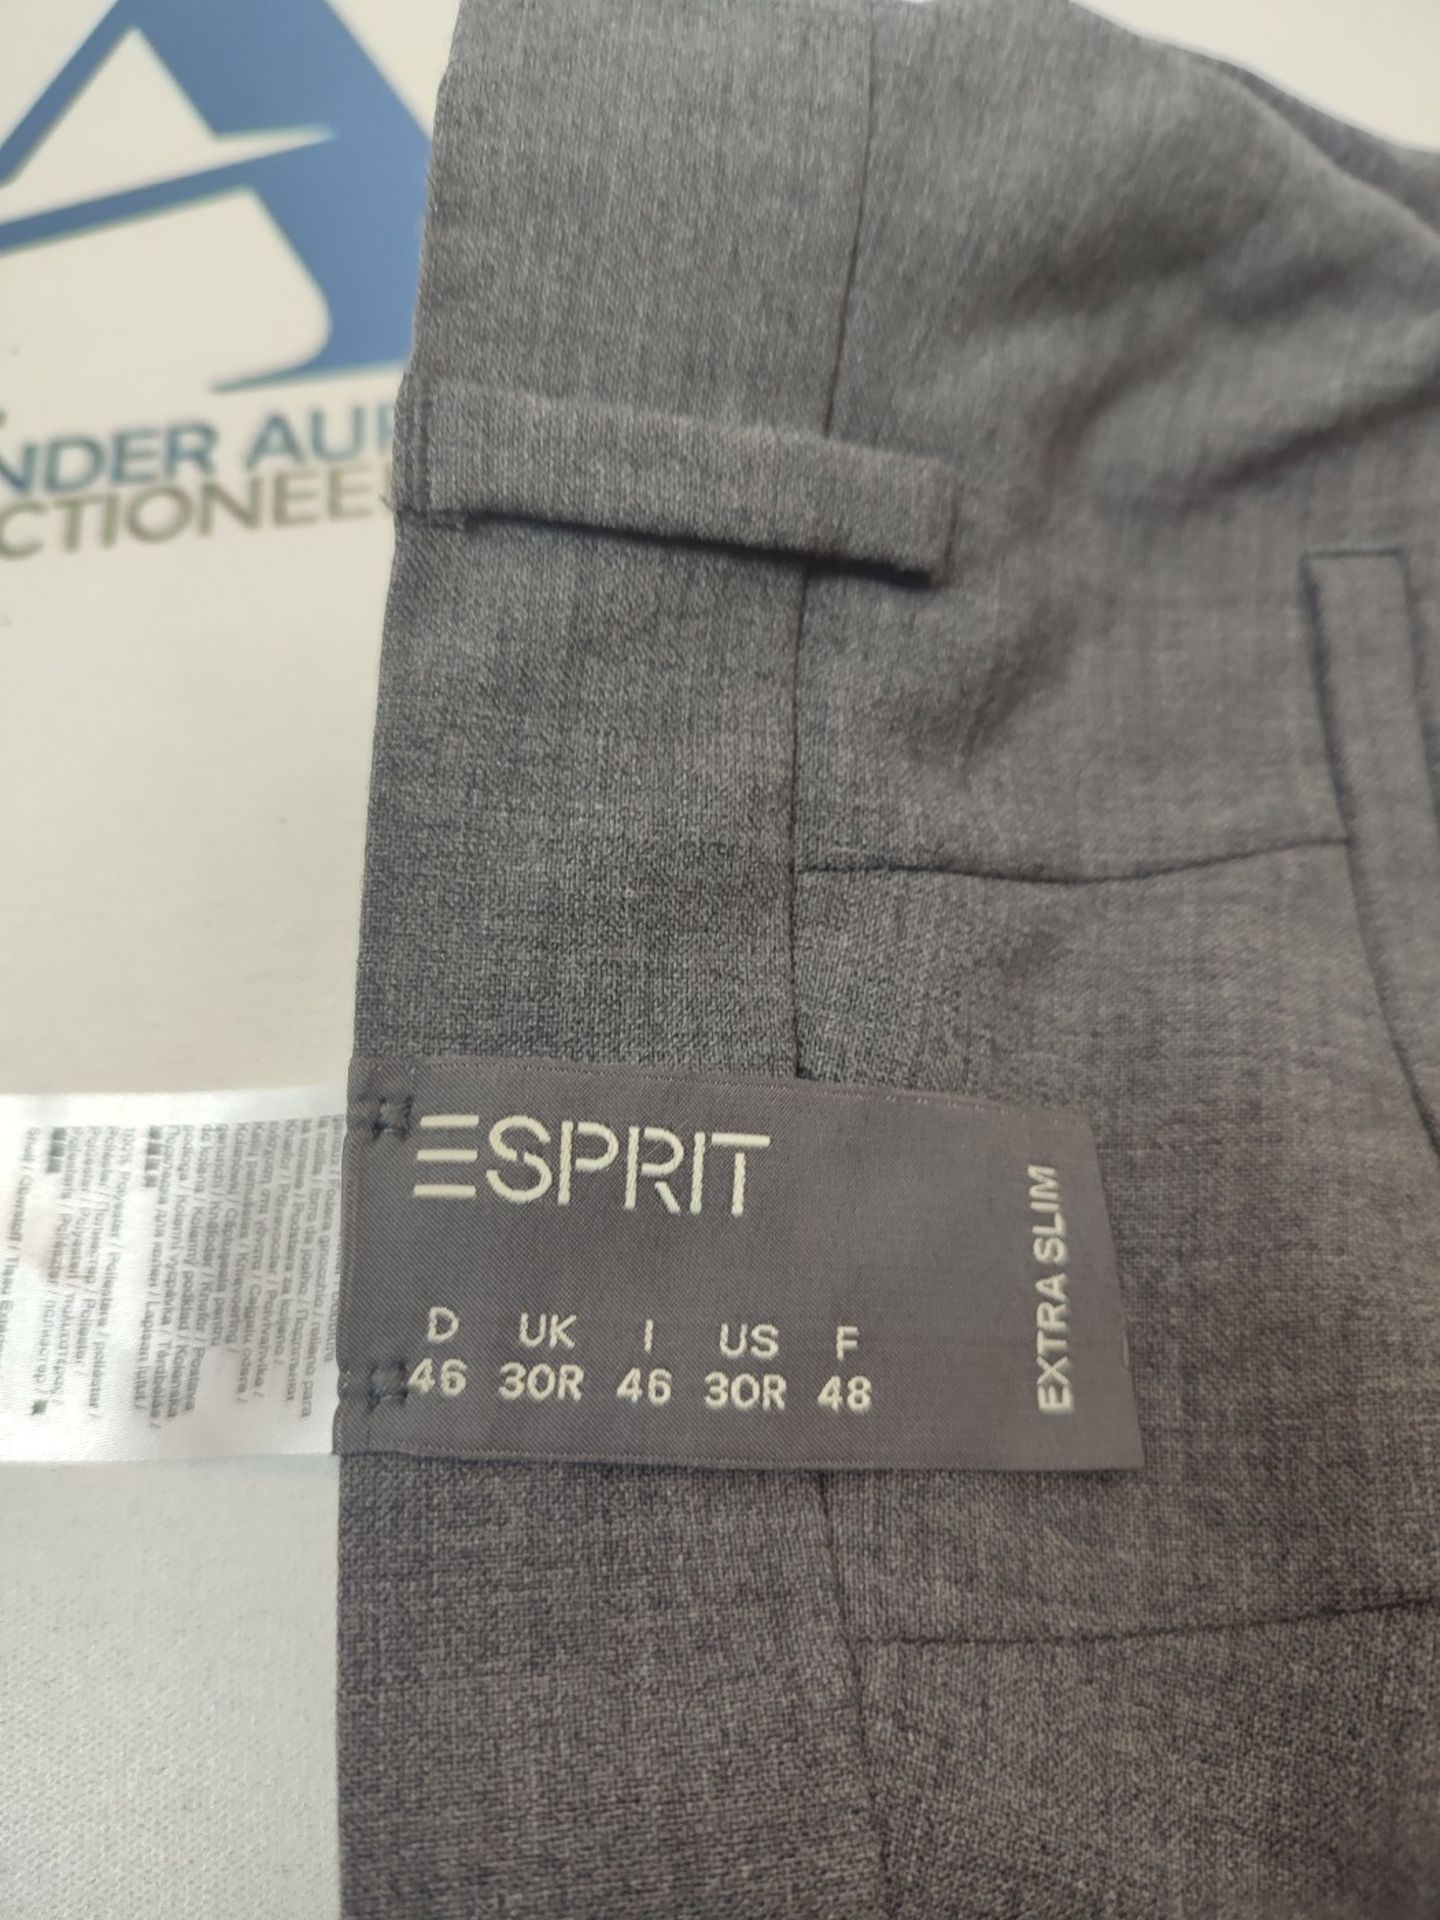 ESPRIT Men's Active Suit Trousers, Grey (Dark Grey), 46 - Bild 3 aus 3